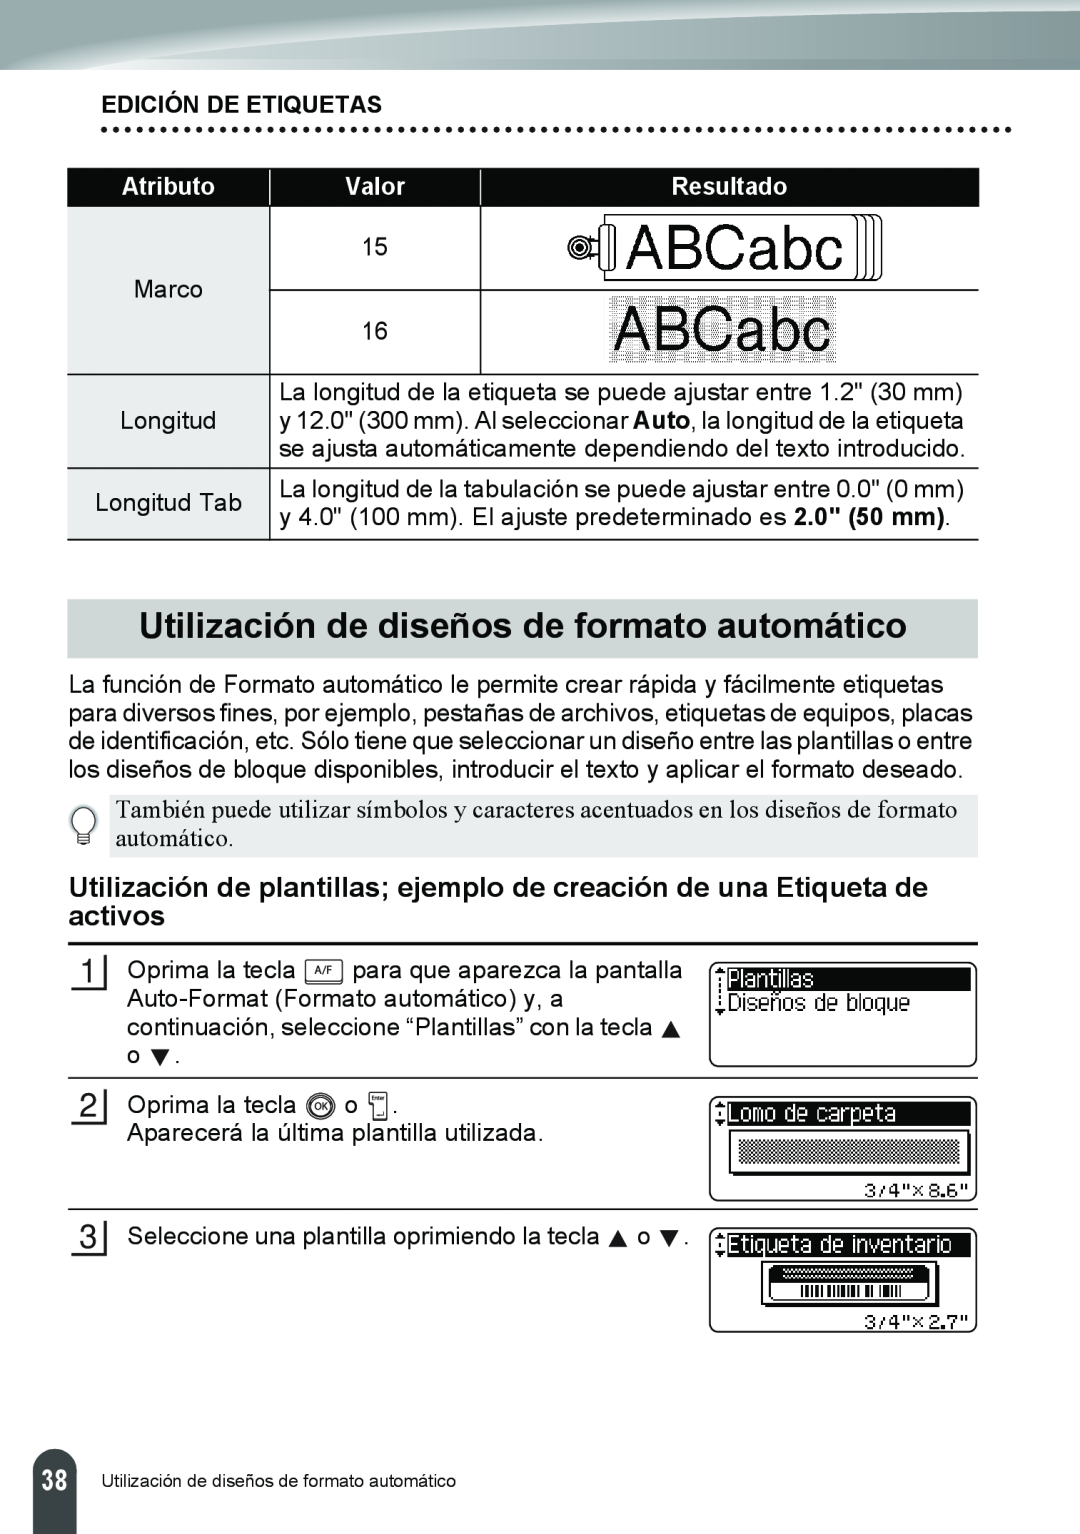 Brother PT-2110, PT-2100 Utilización de diseños de formato automático, Edición De Etiquetas, Atributo, Valor, Resultado 